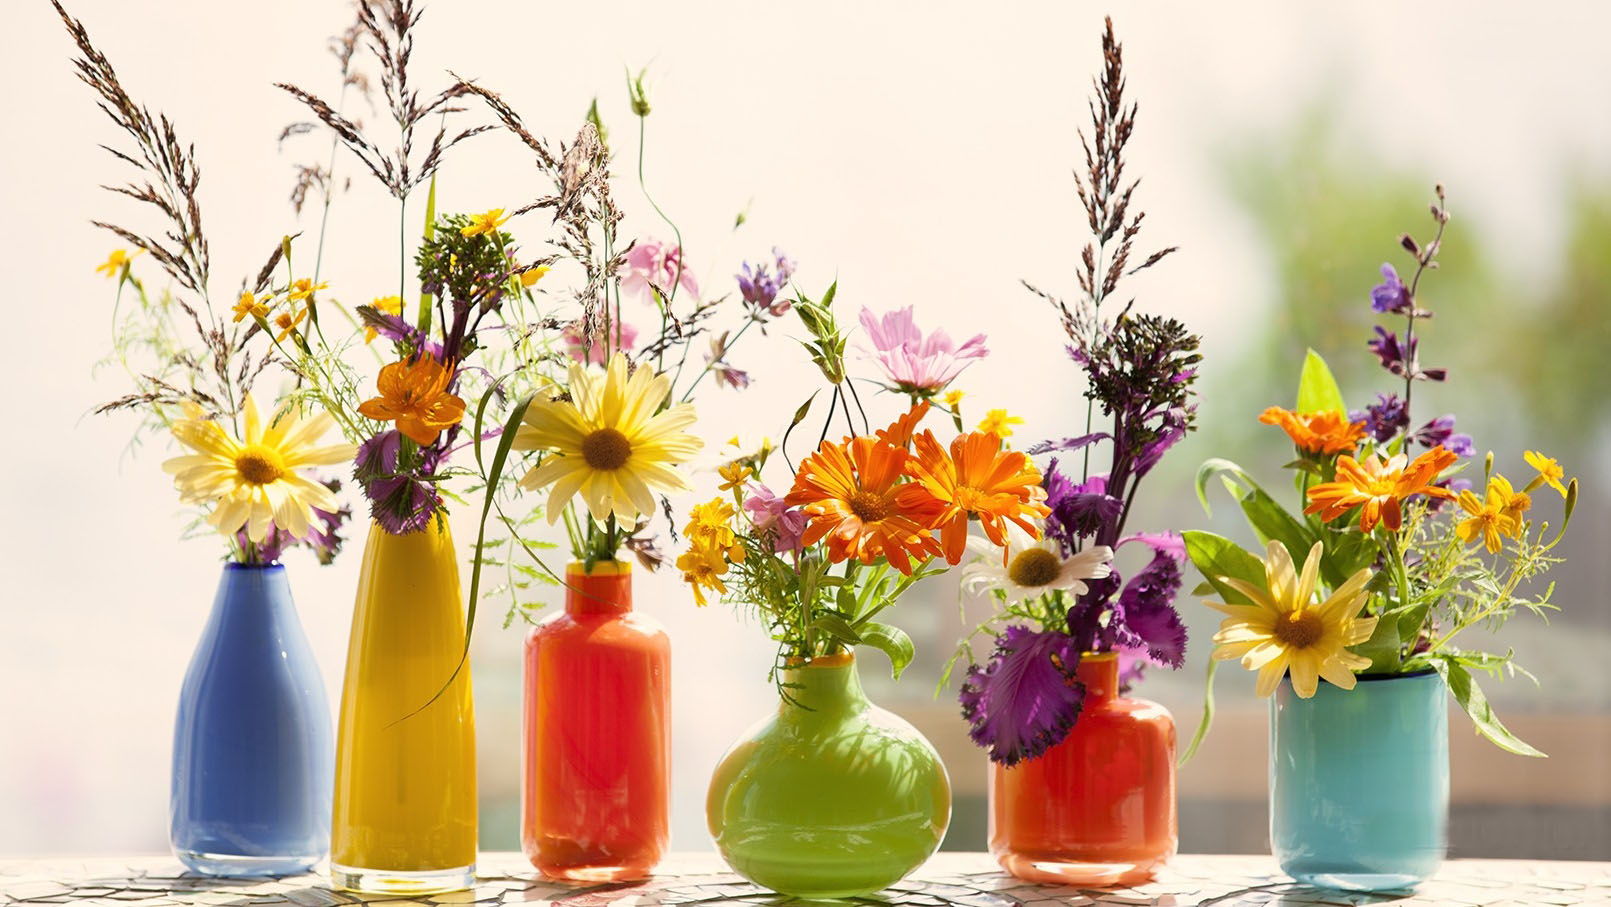 Trắc nghiệm vui: Bạn sẽ dùng chiếc bình nào để cắm hoa?